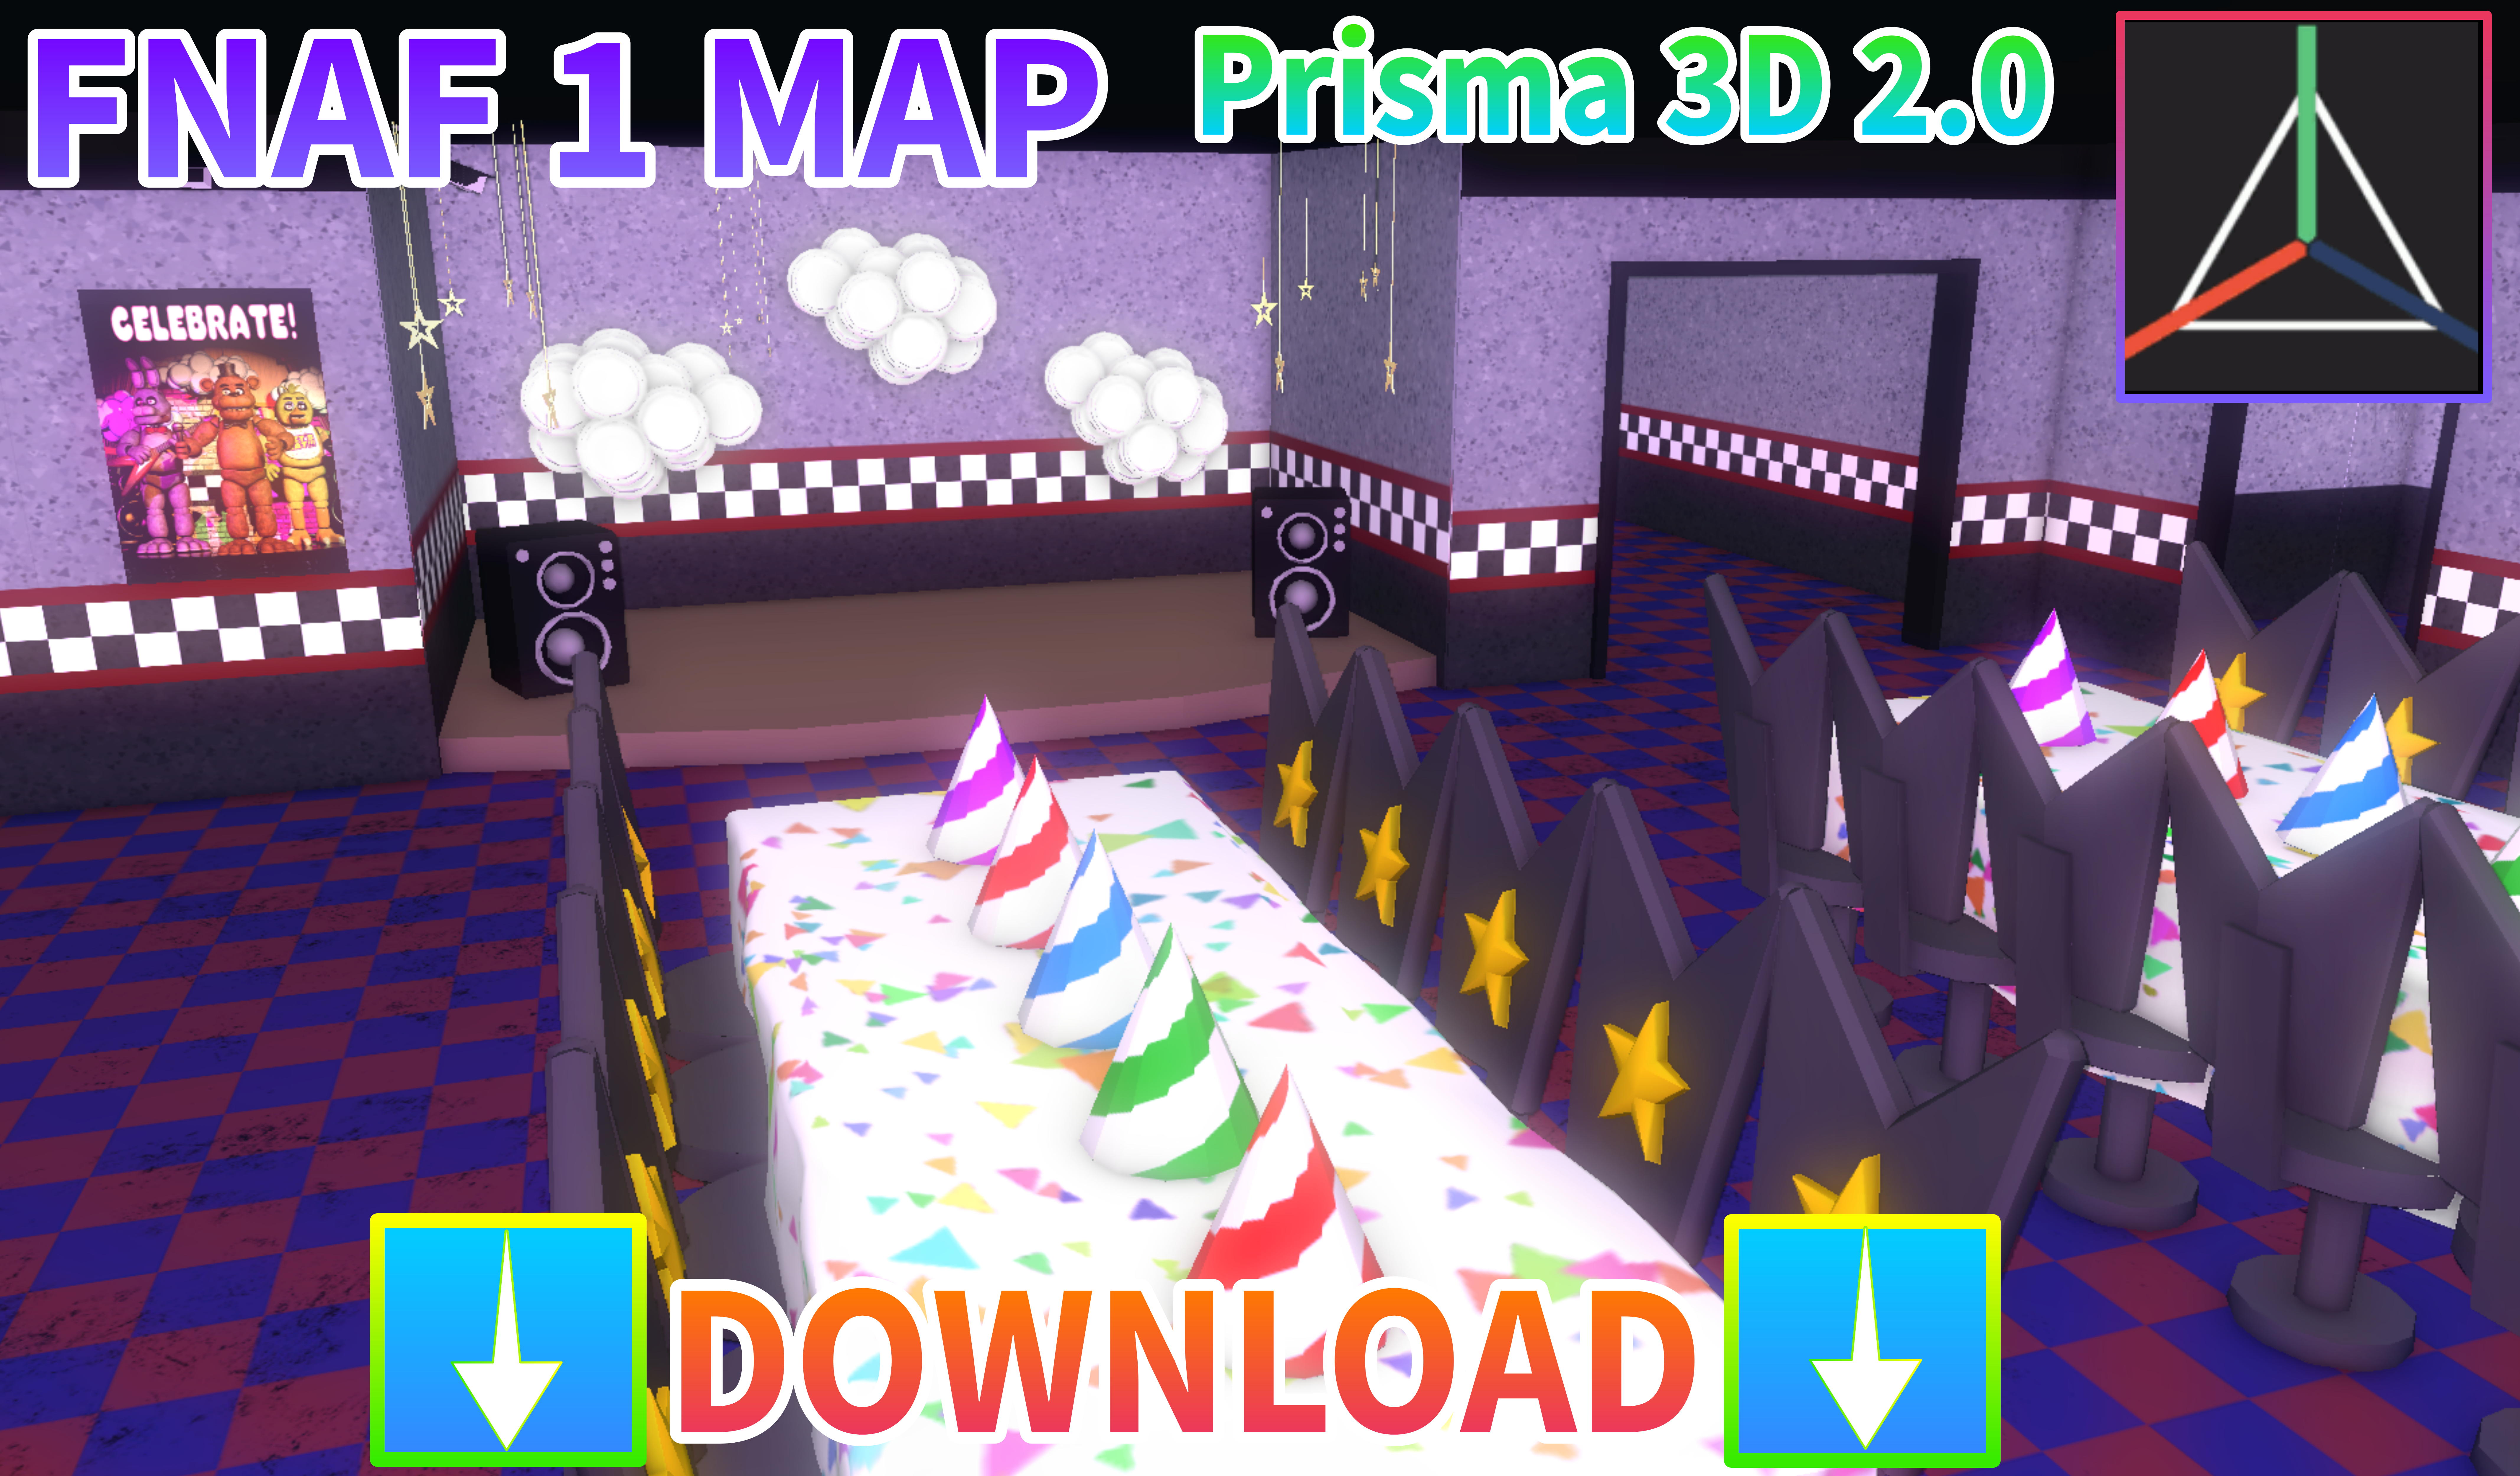 DOWNLOAD FNAF 1 MAP [PRISMA 3D 2.0] by FoxAnimator007 on DeviantArt